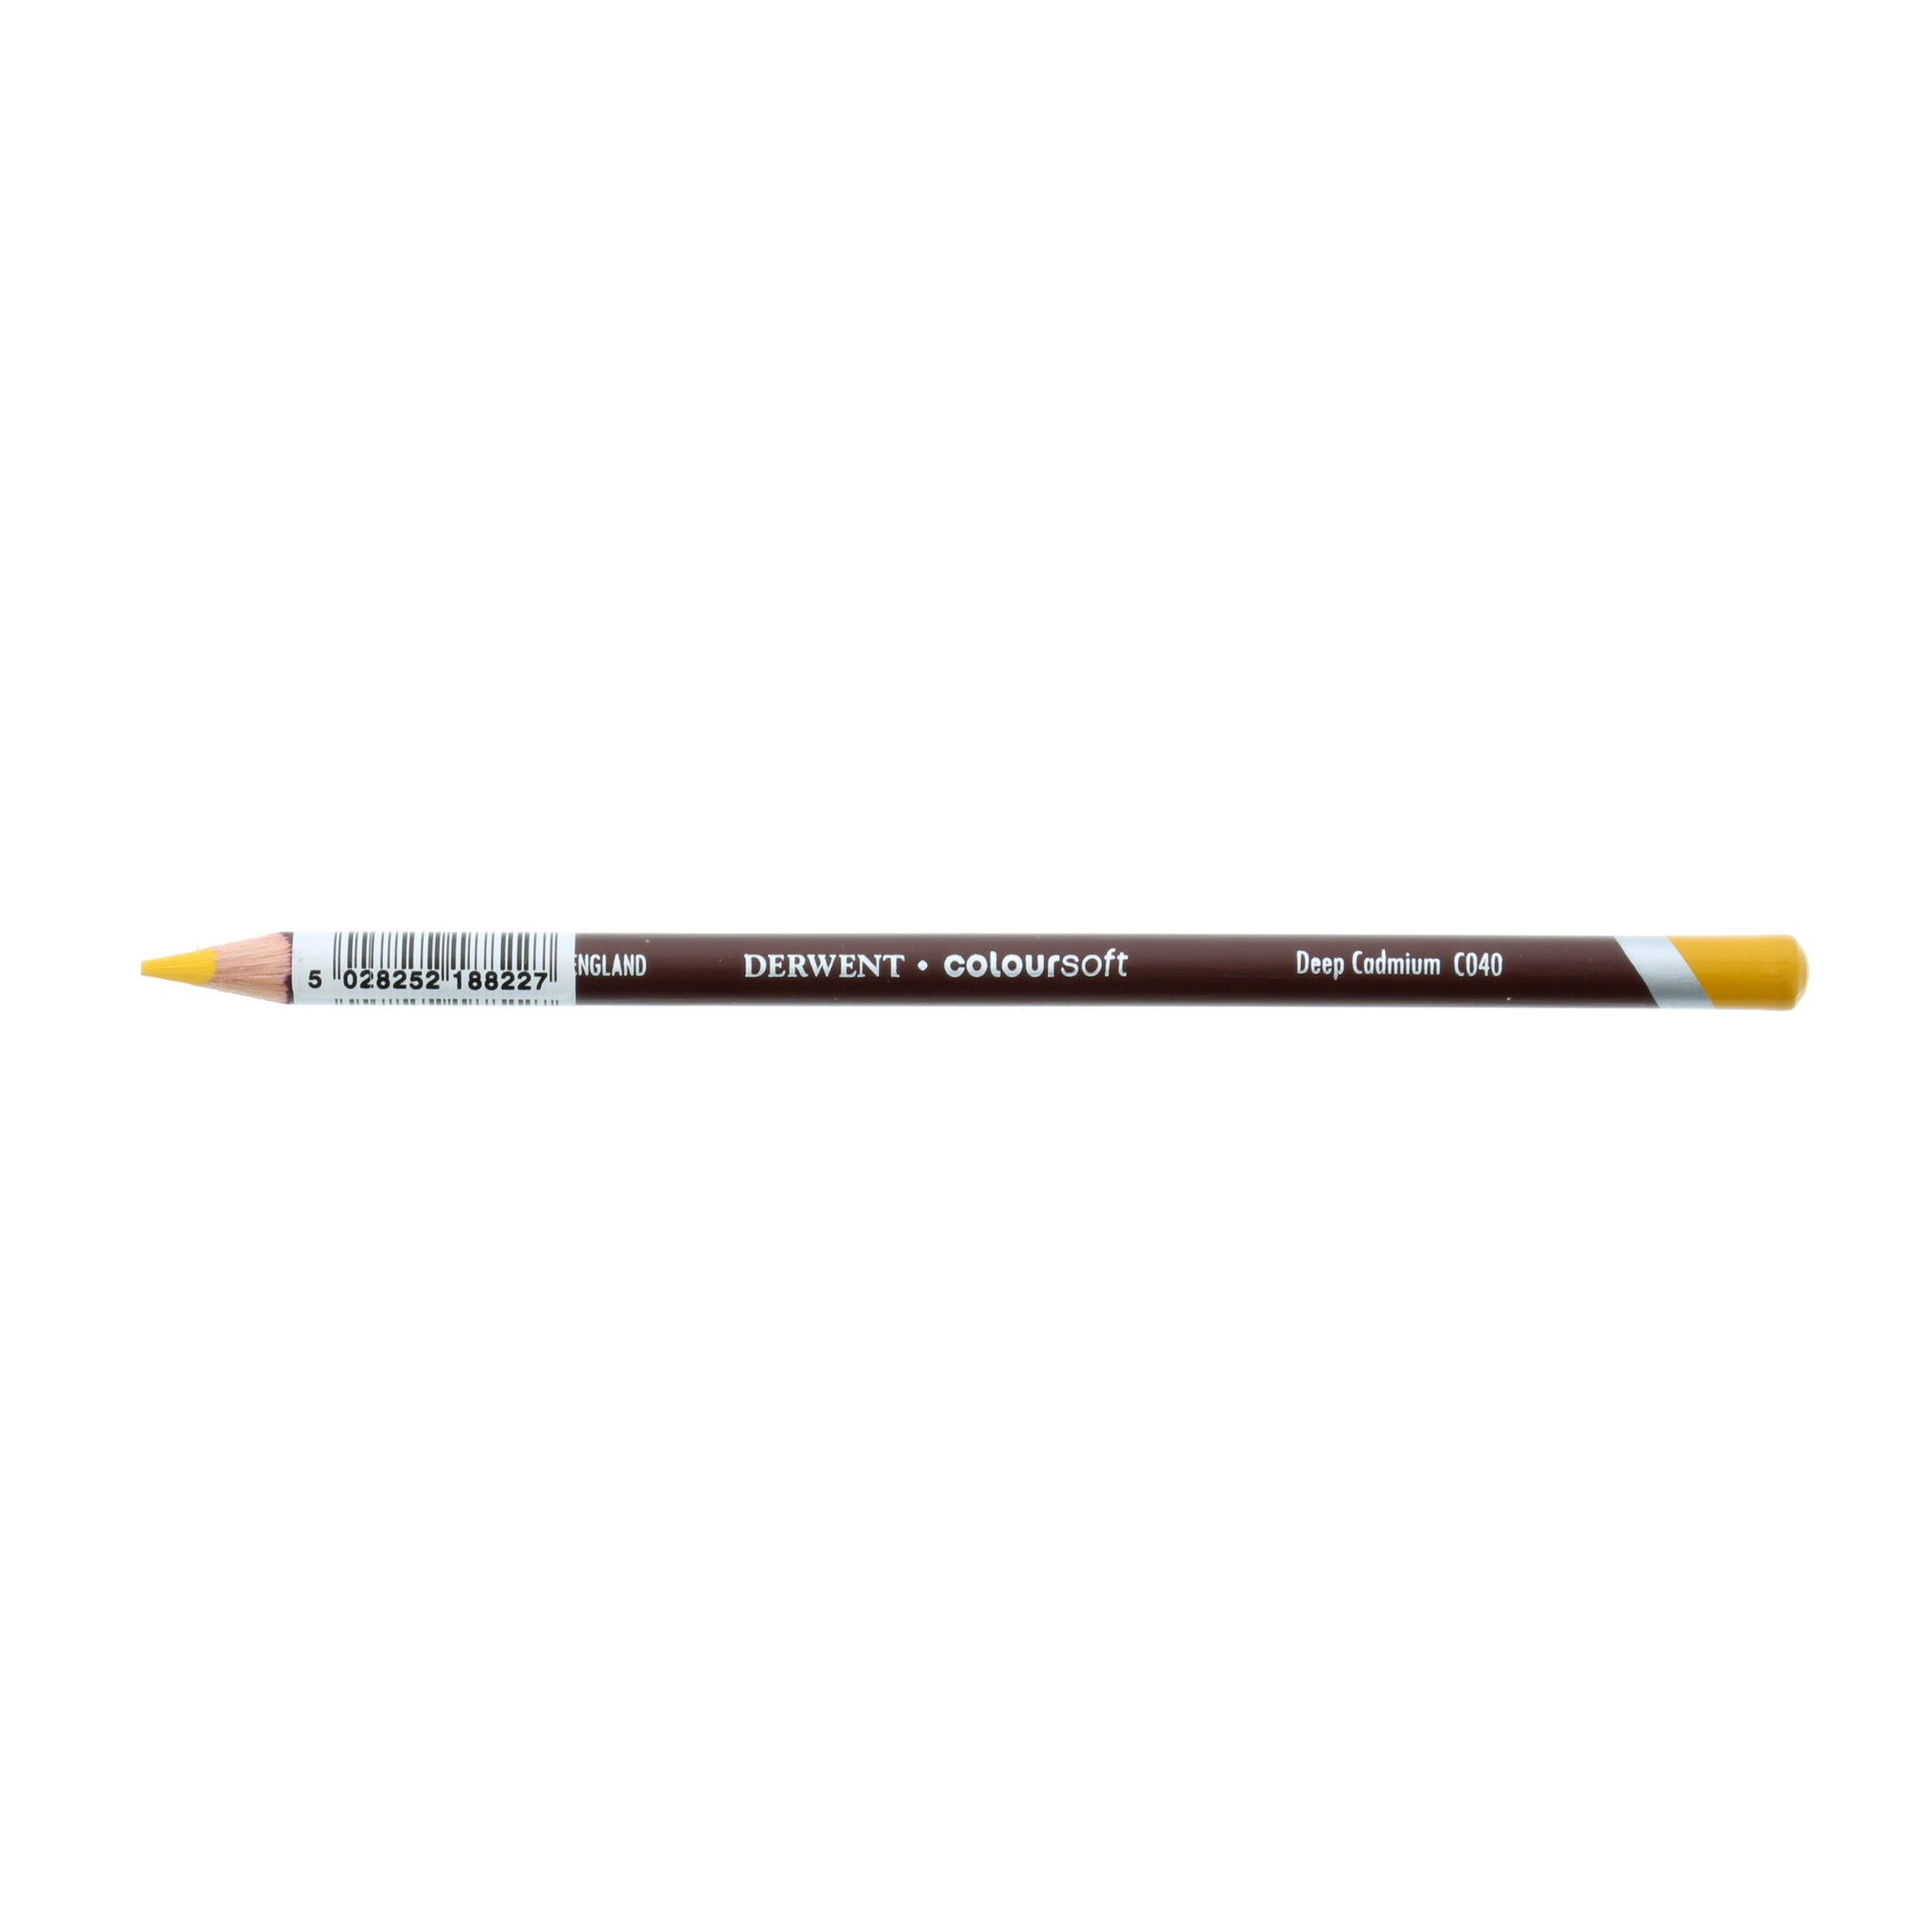 Derwent Coloursoft Pencils & Sets